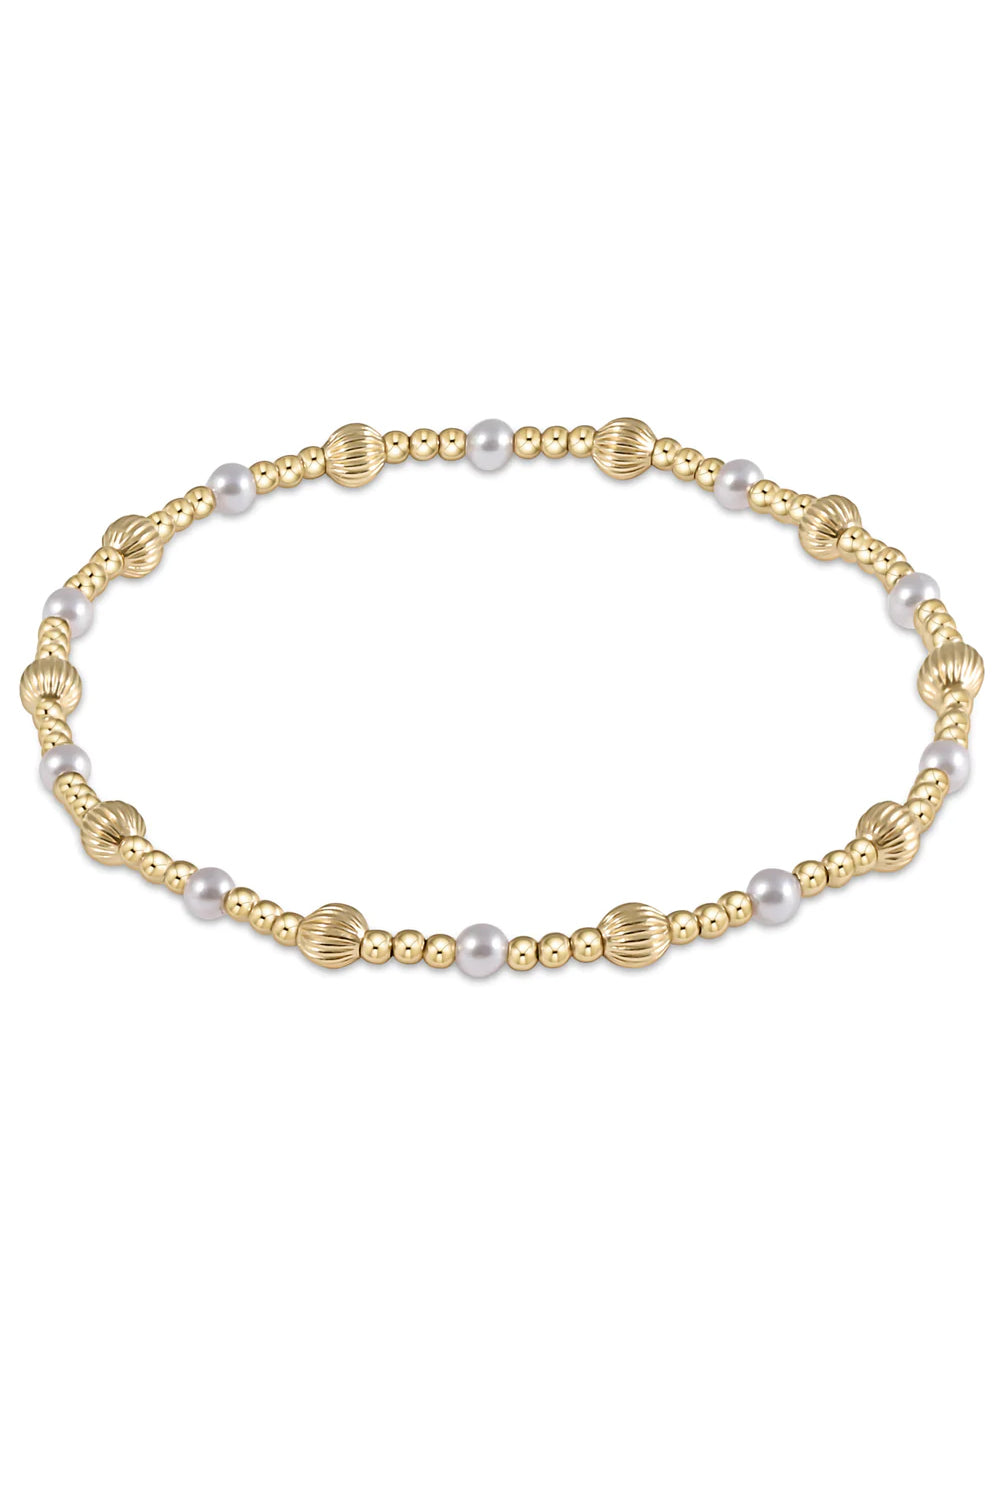 enewton: Dignity Sincerity Pattern 4mm Bead Bracelet - Pearl | Makk Fashions